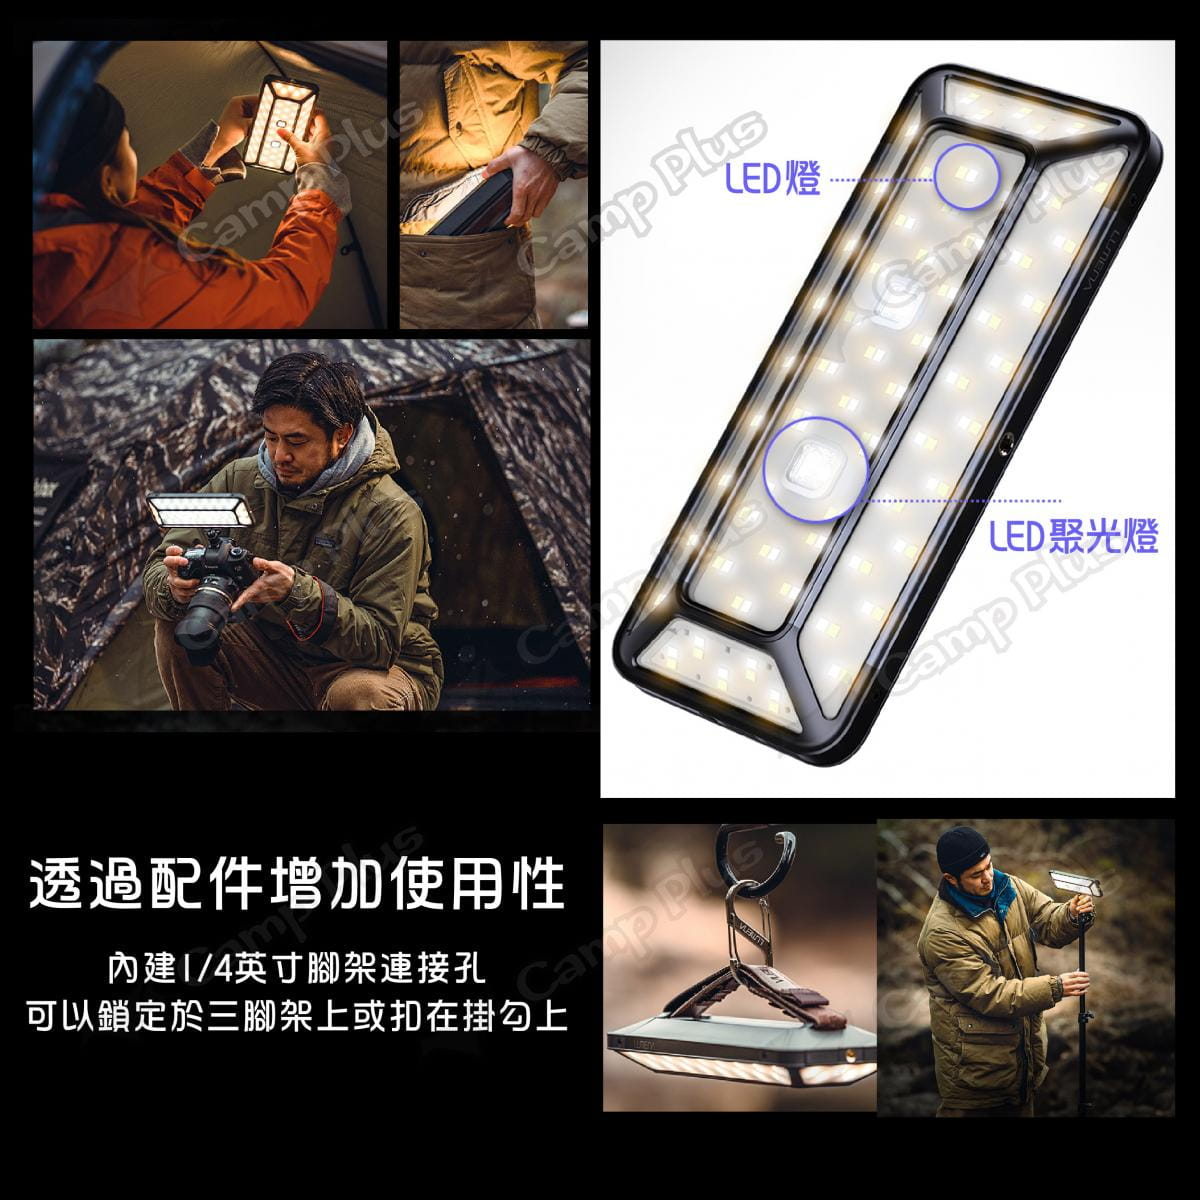 【N9 LUMENA】PRO五面廣角行動電源LED燈 (悠遊戶外) 5